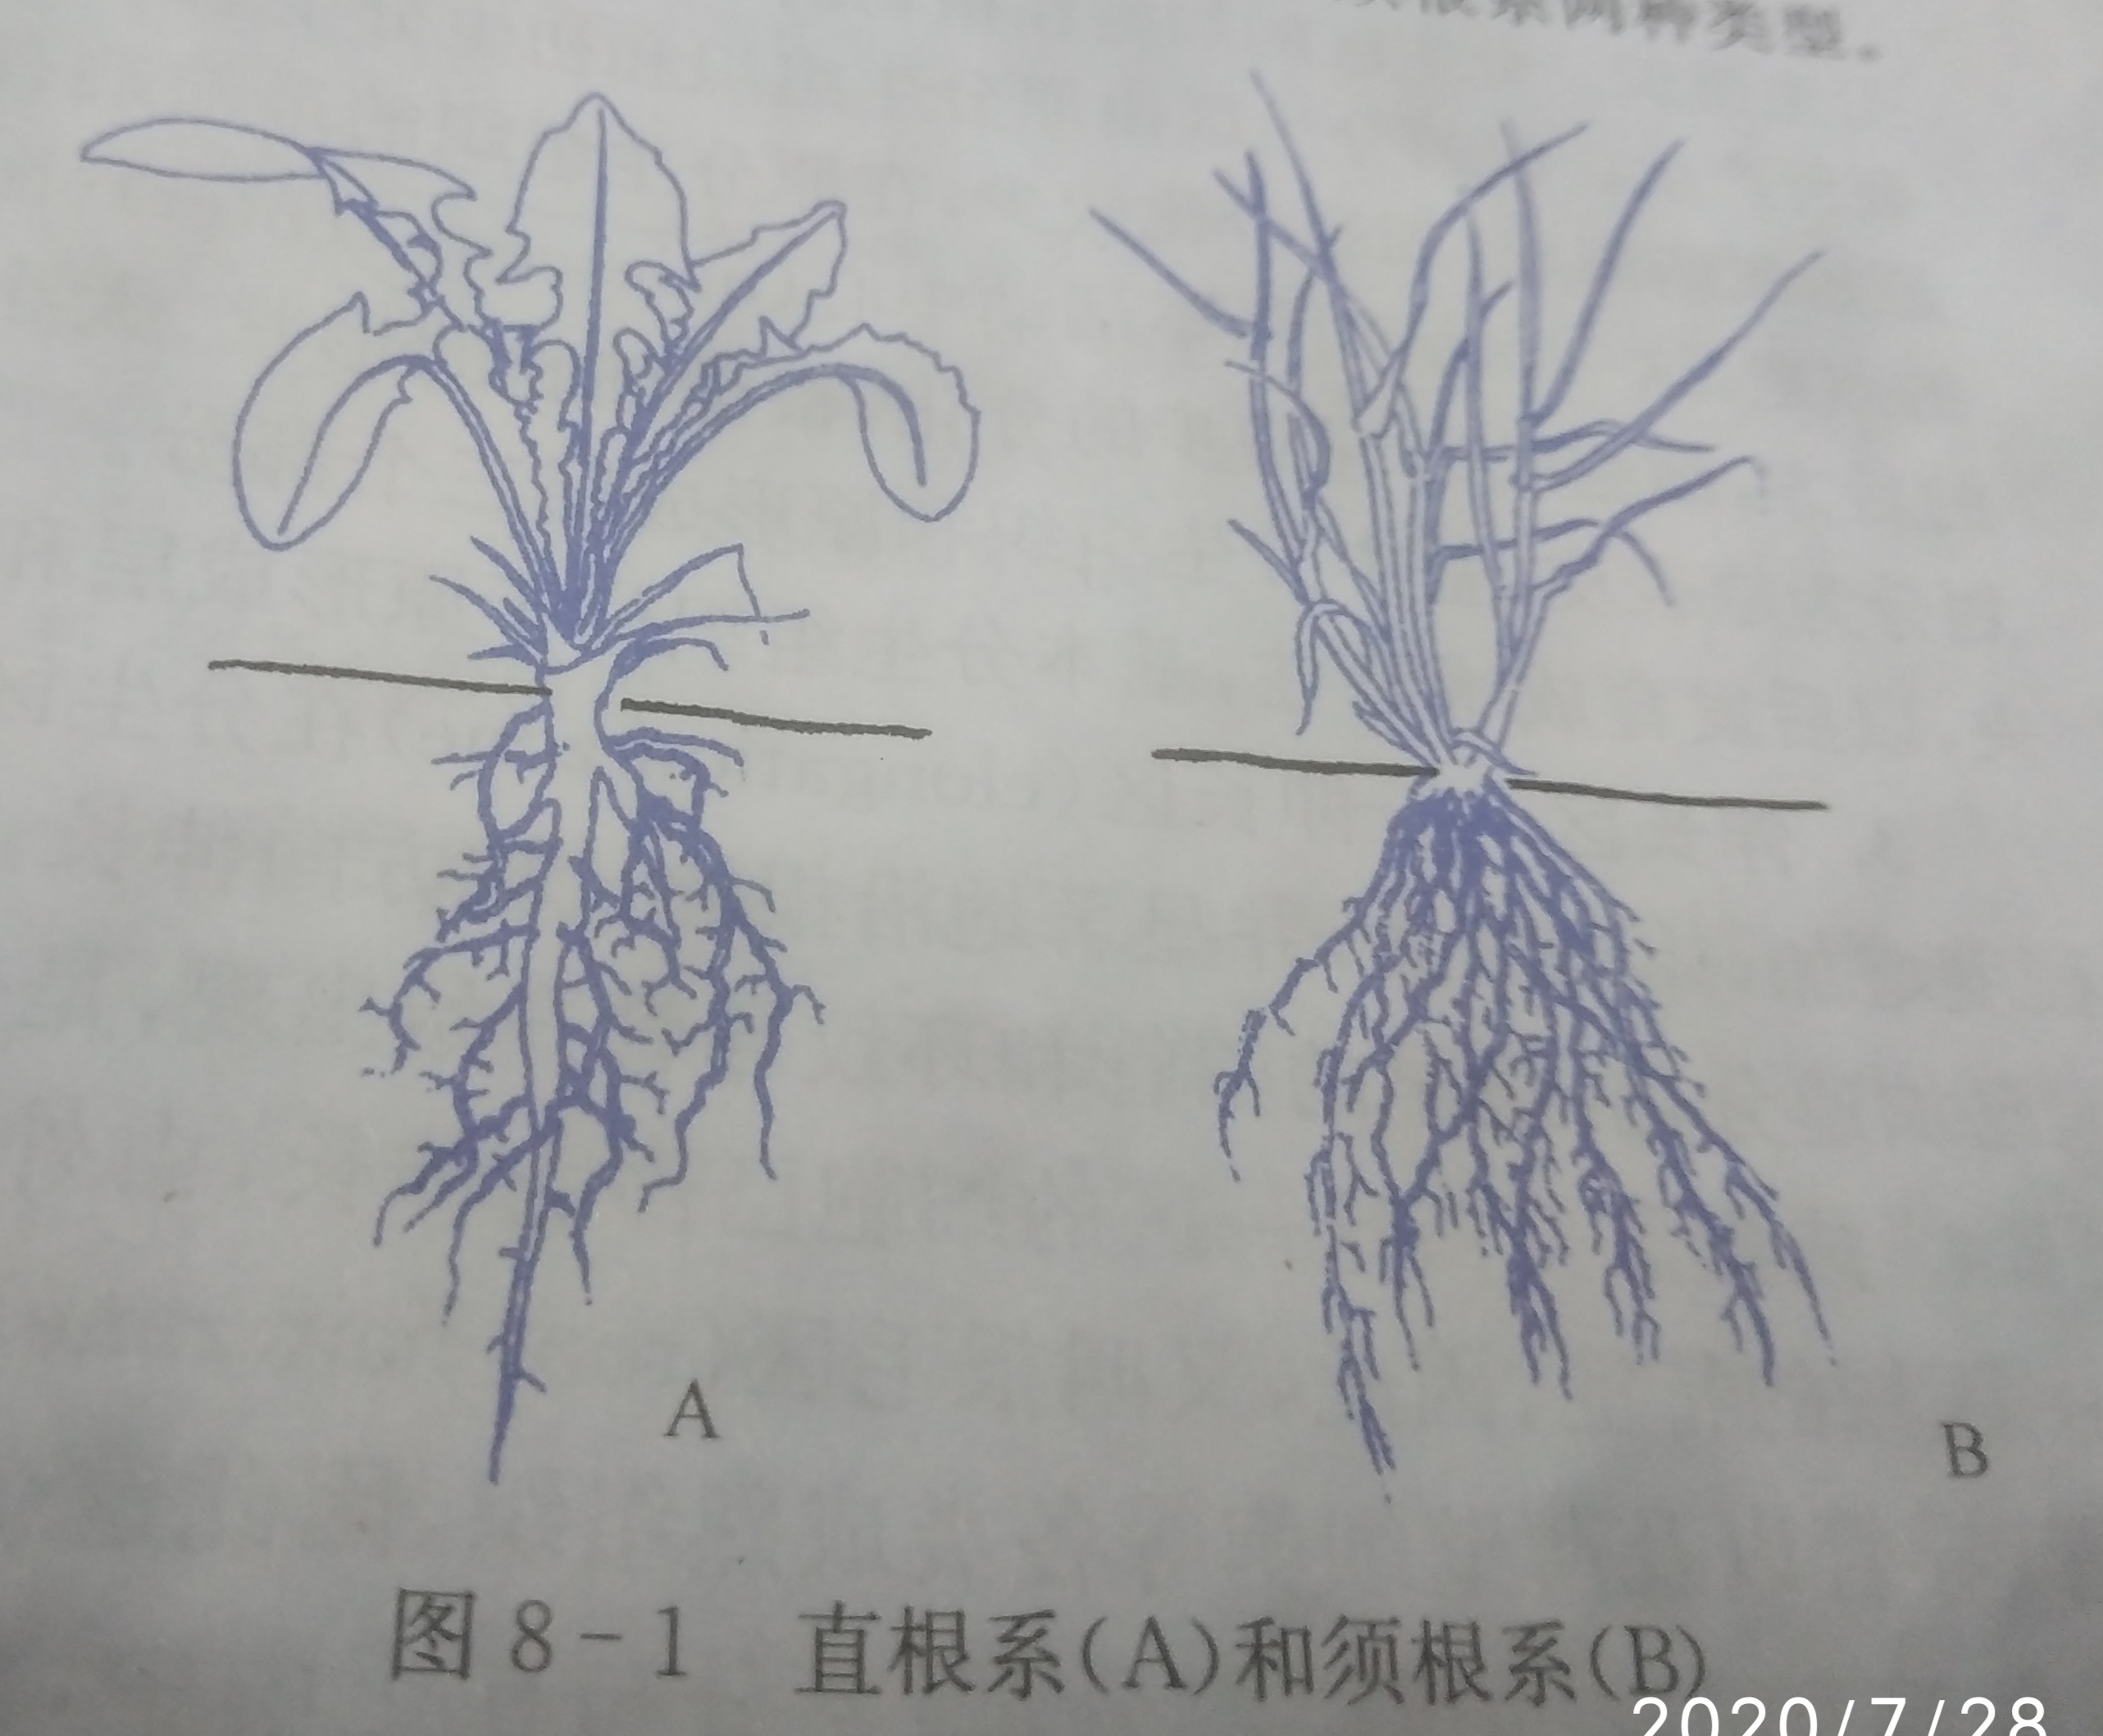 植物杀手的抄书记录 3 根的类型和根系 根的生理功能 Acfun弹幕视频网 认真你就输啦 W ノ つロ